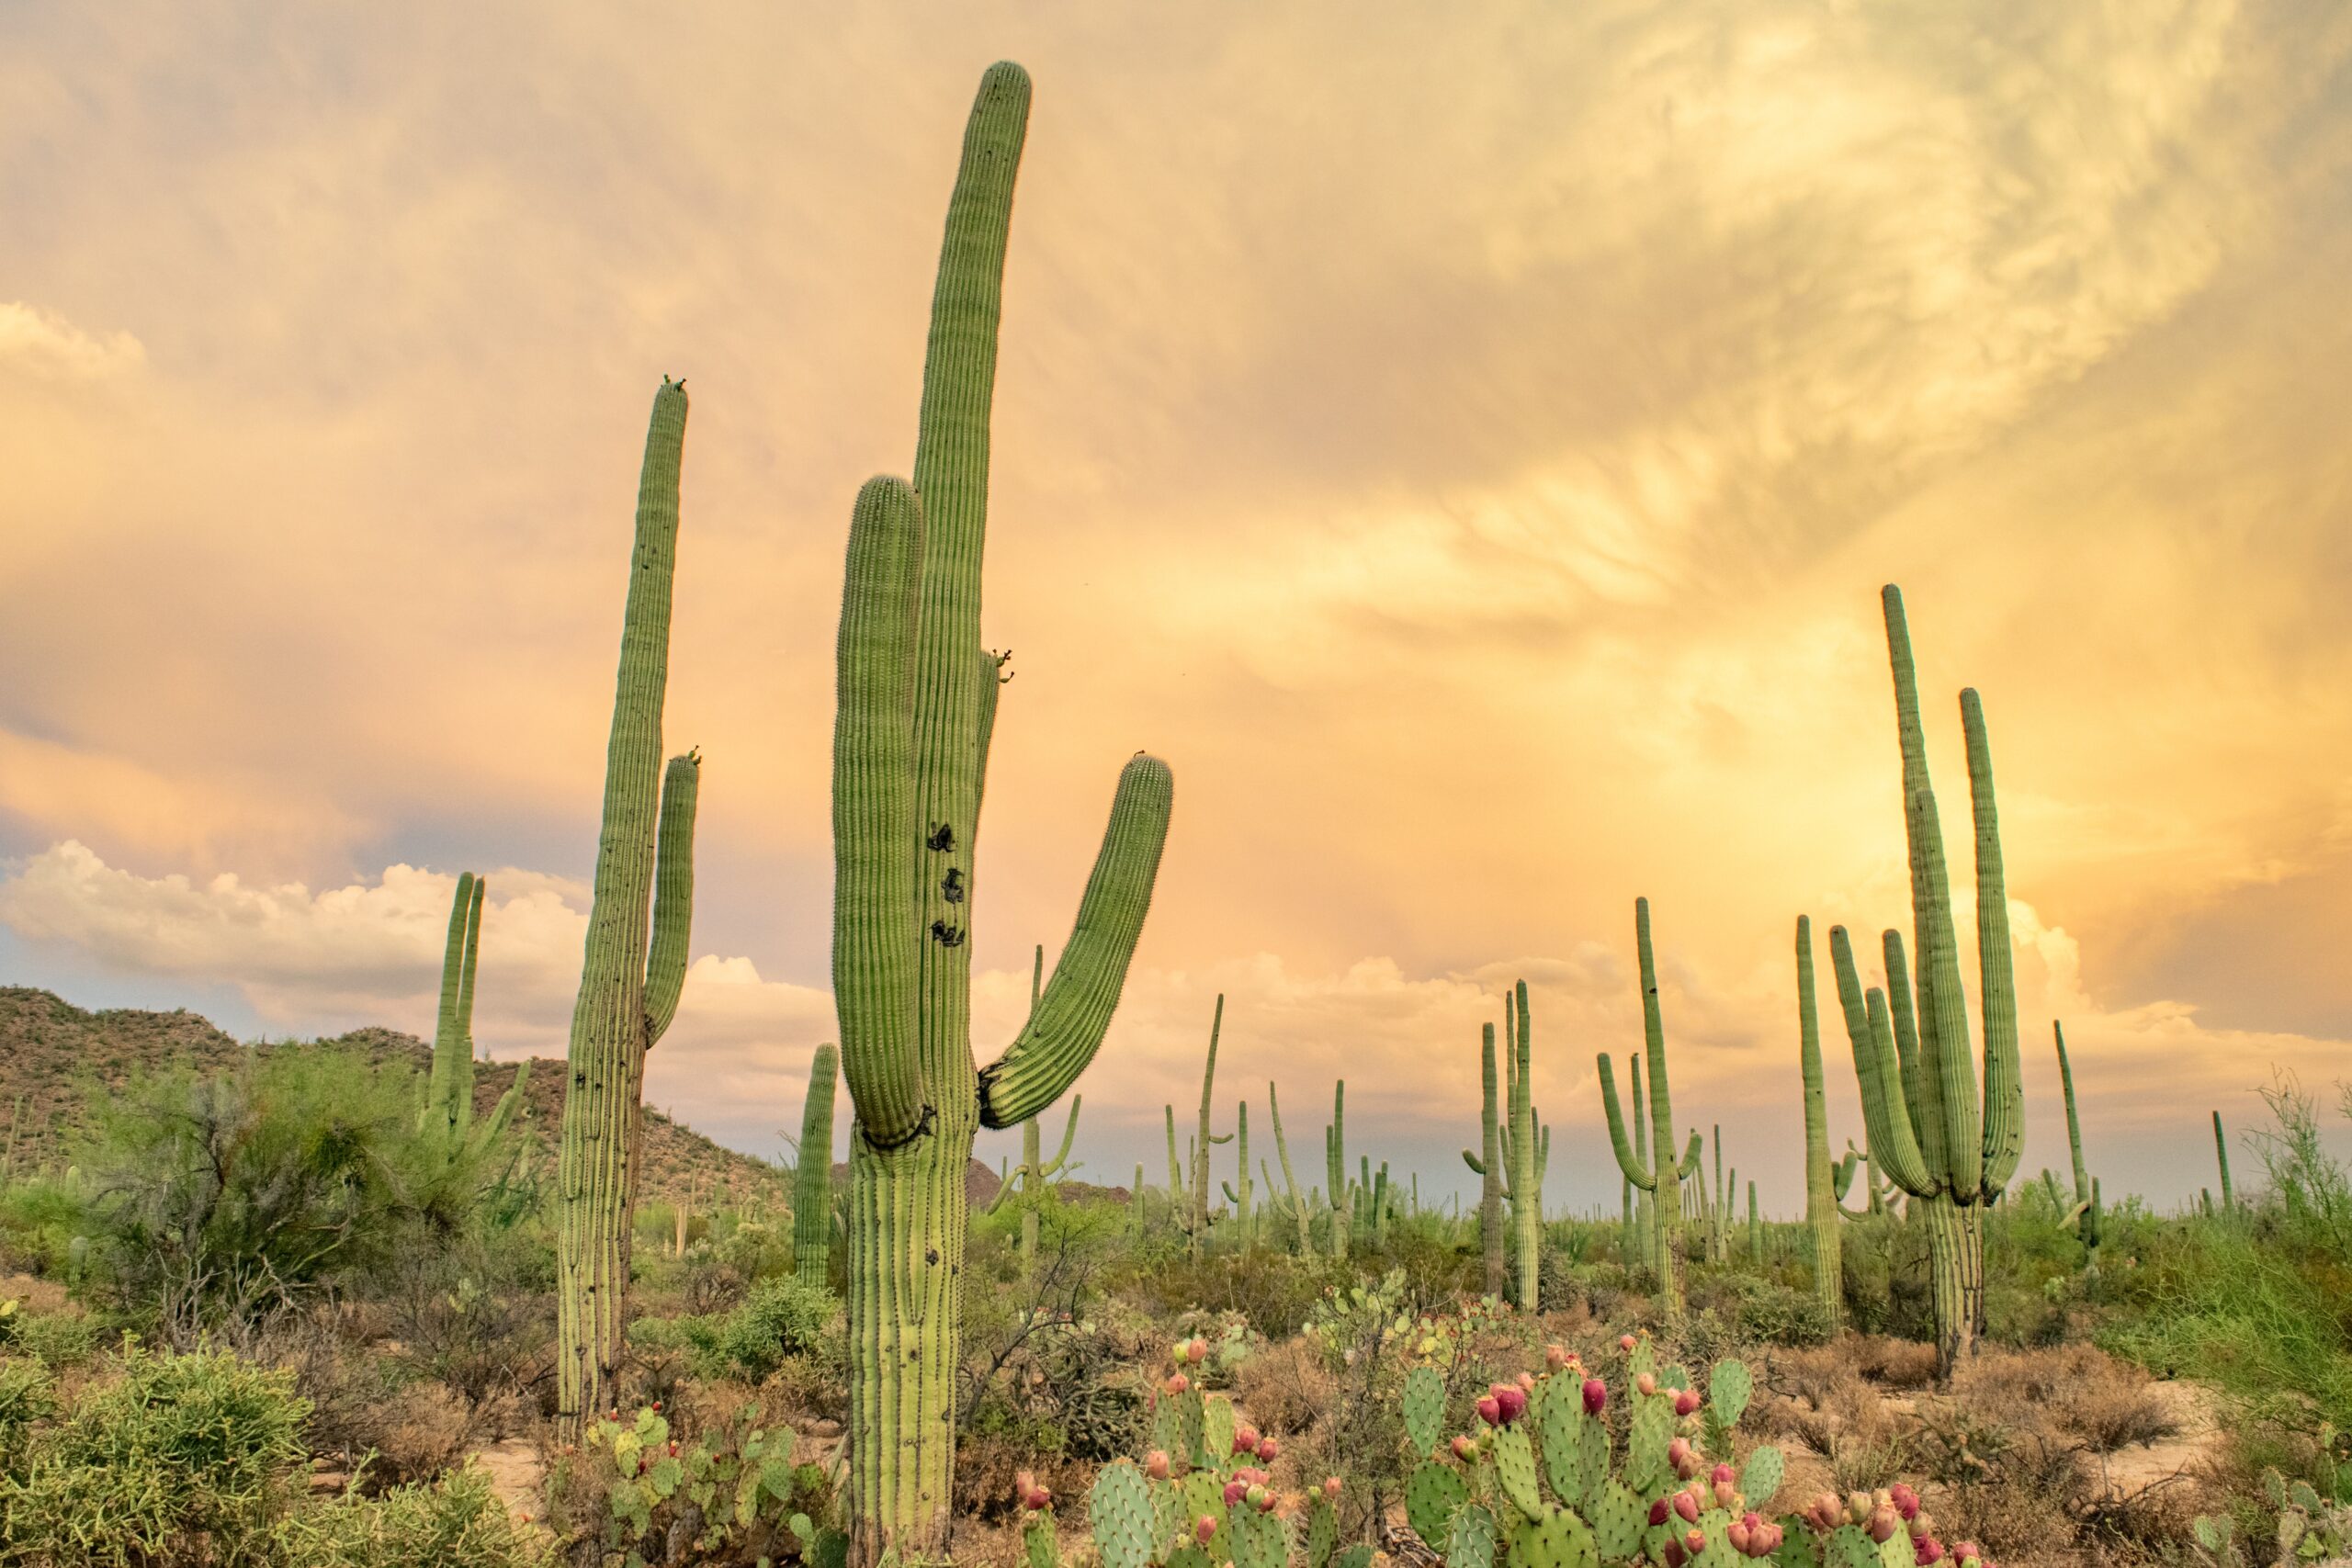 Cactus in Tucson, Arizona